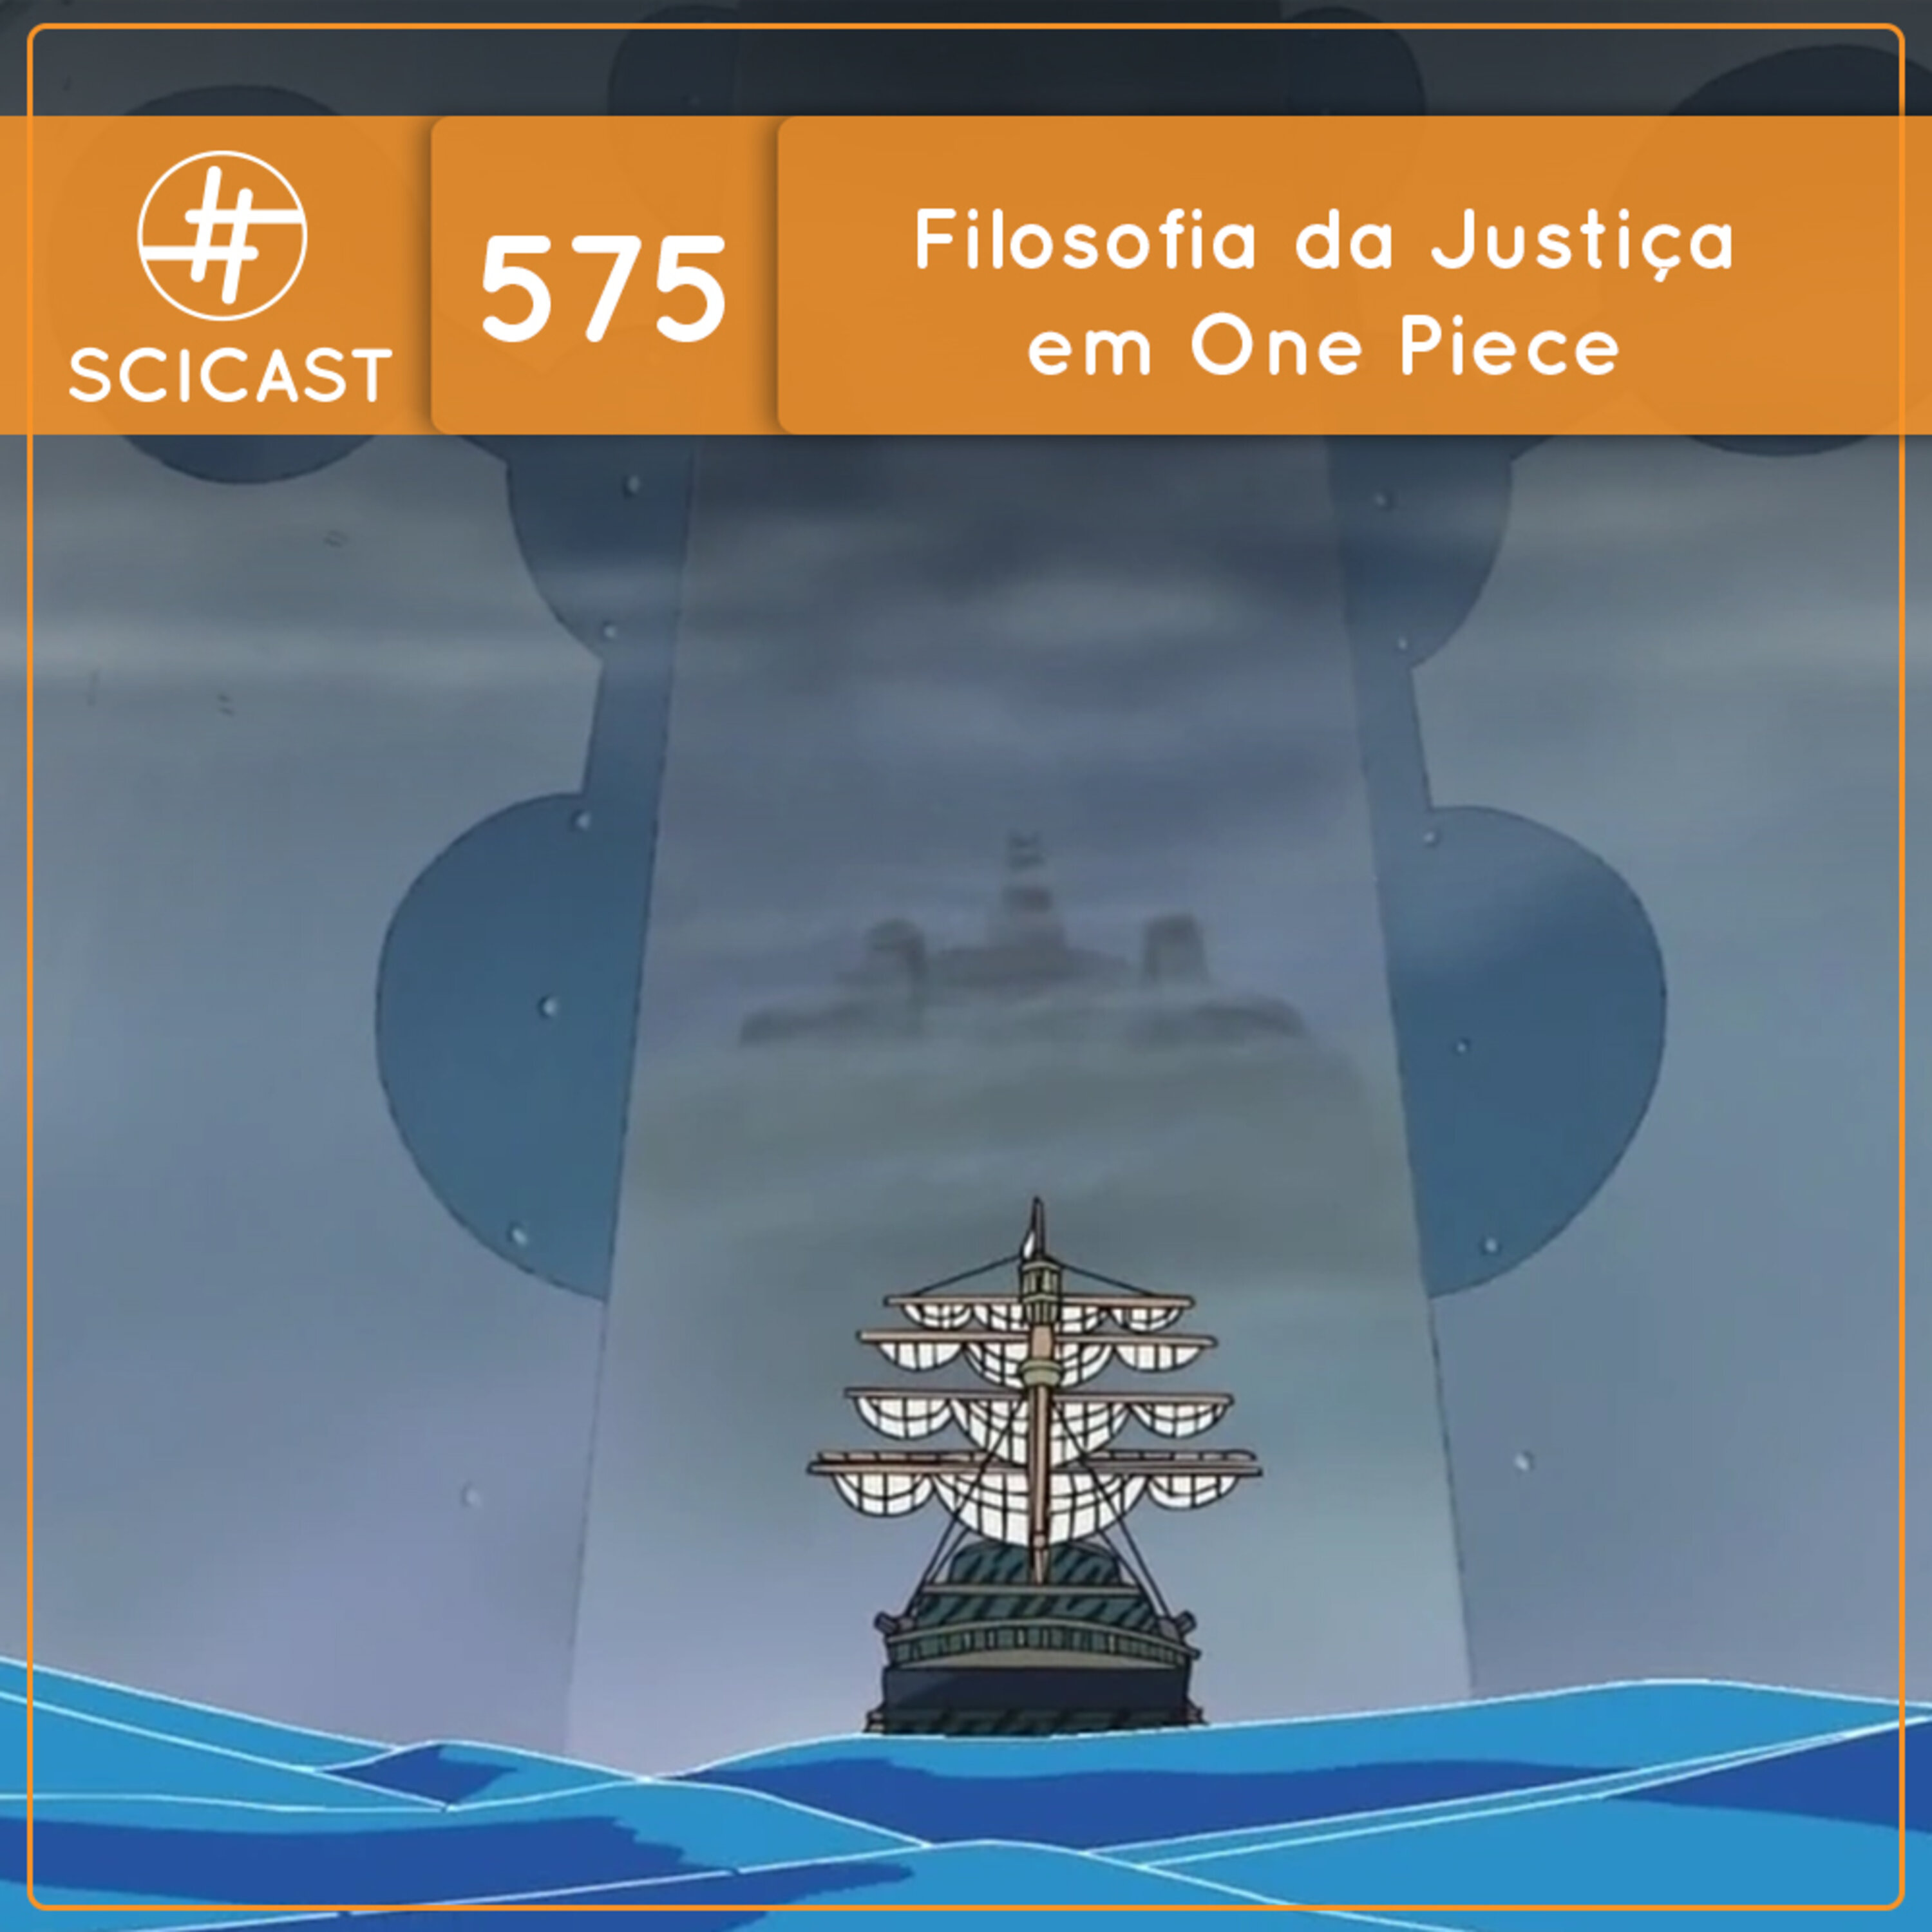 Filosofia da Justiça em One Piece (SciCast #575)